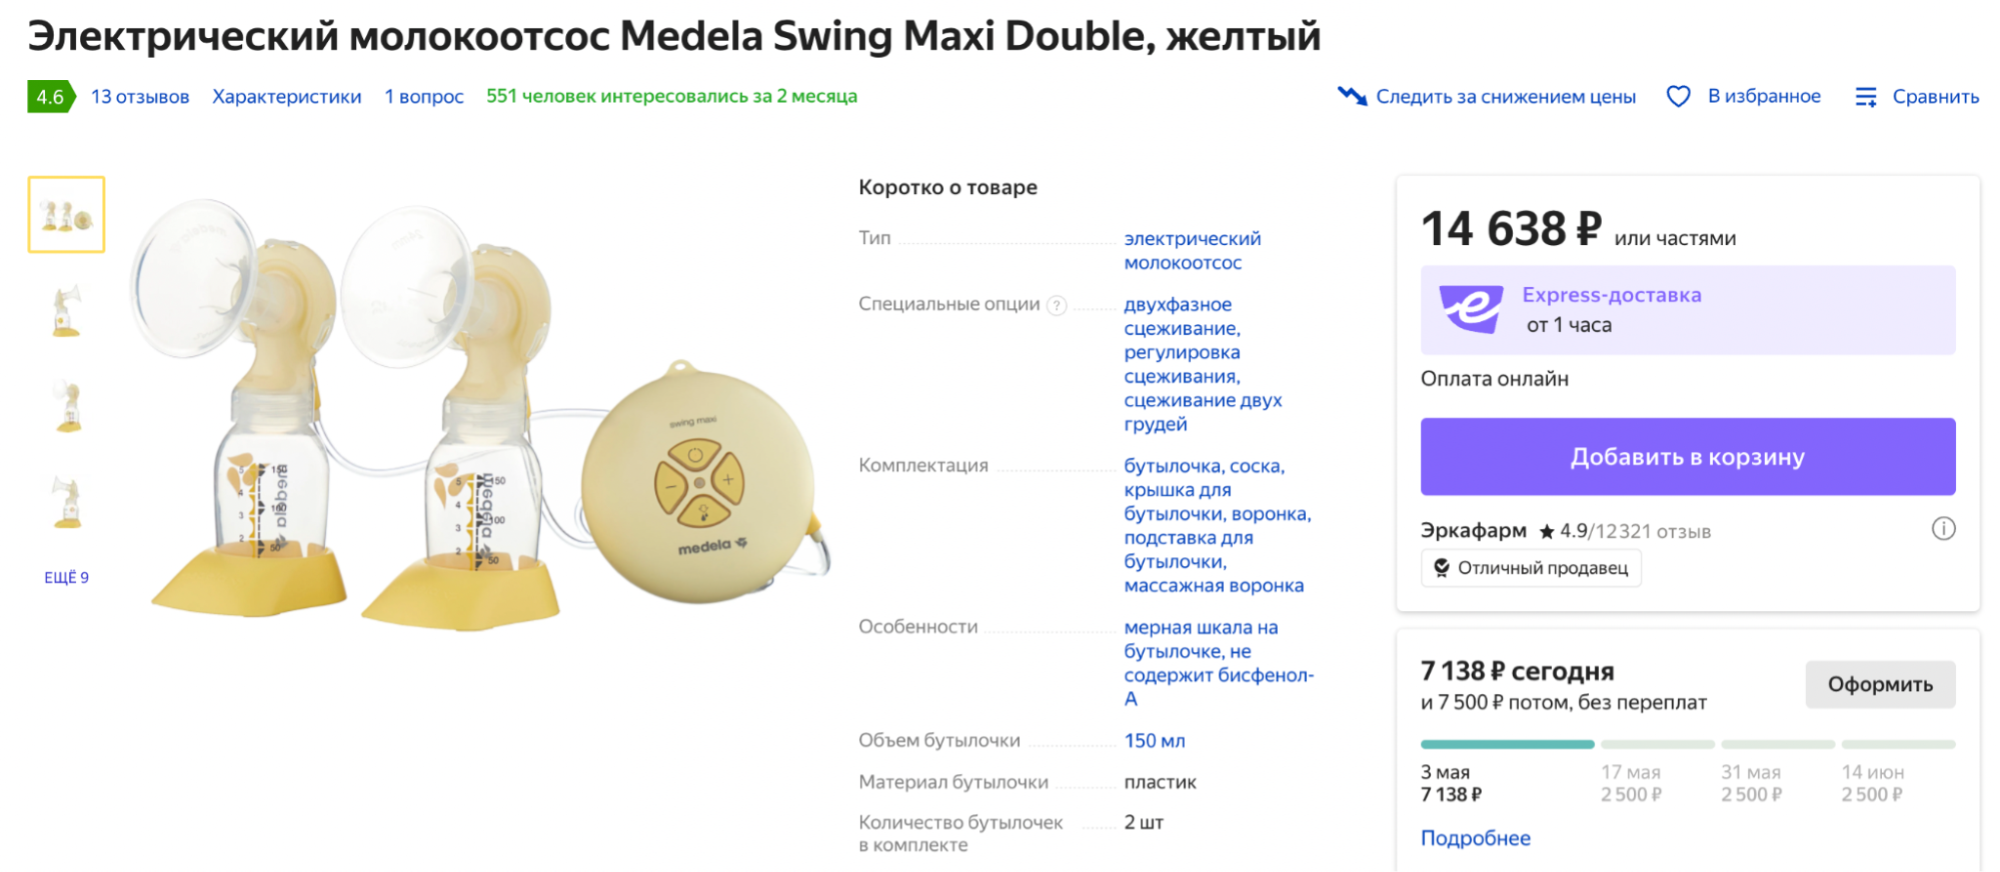 Молокоотсос от Medela для двойни стоит примерно на 3000 ₽ больше, чем точно такой же гаджет с одной воронкой. Источник: market.yandex.ru